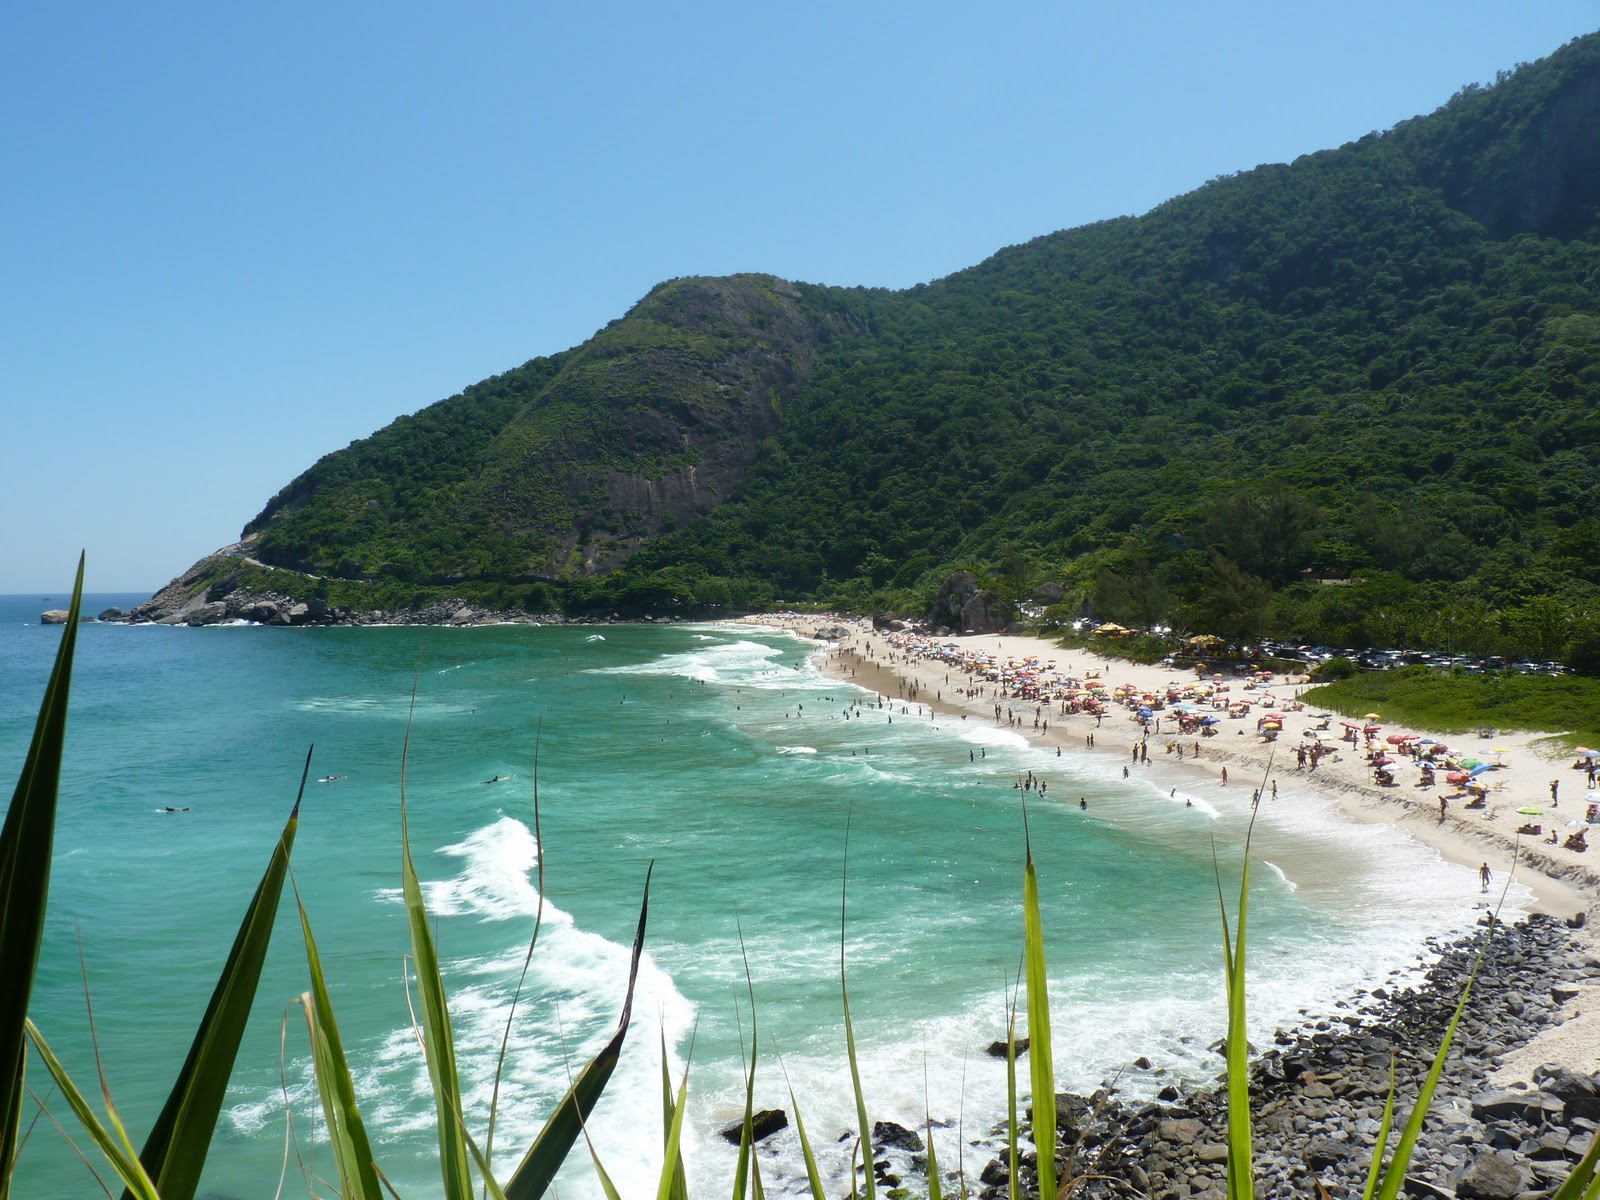 Onde encontrar praias no Rio de Janeiro de beleza selvagem?